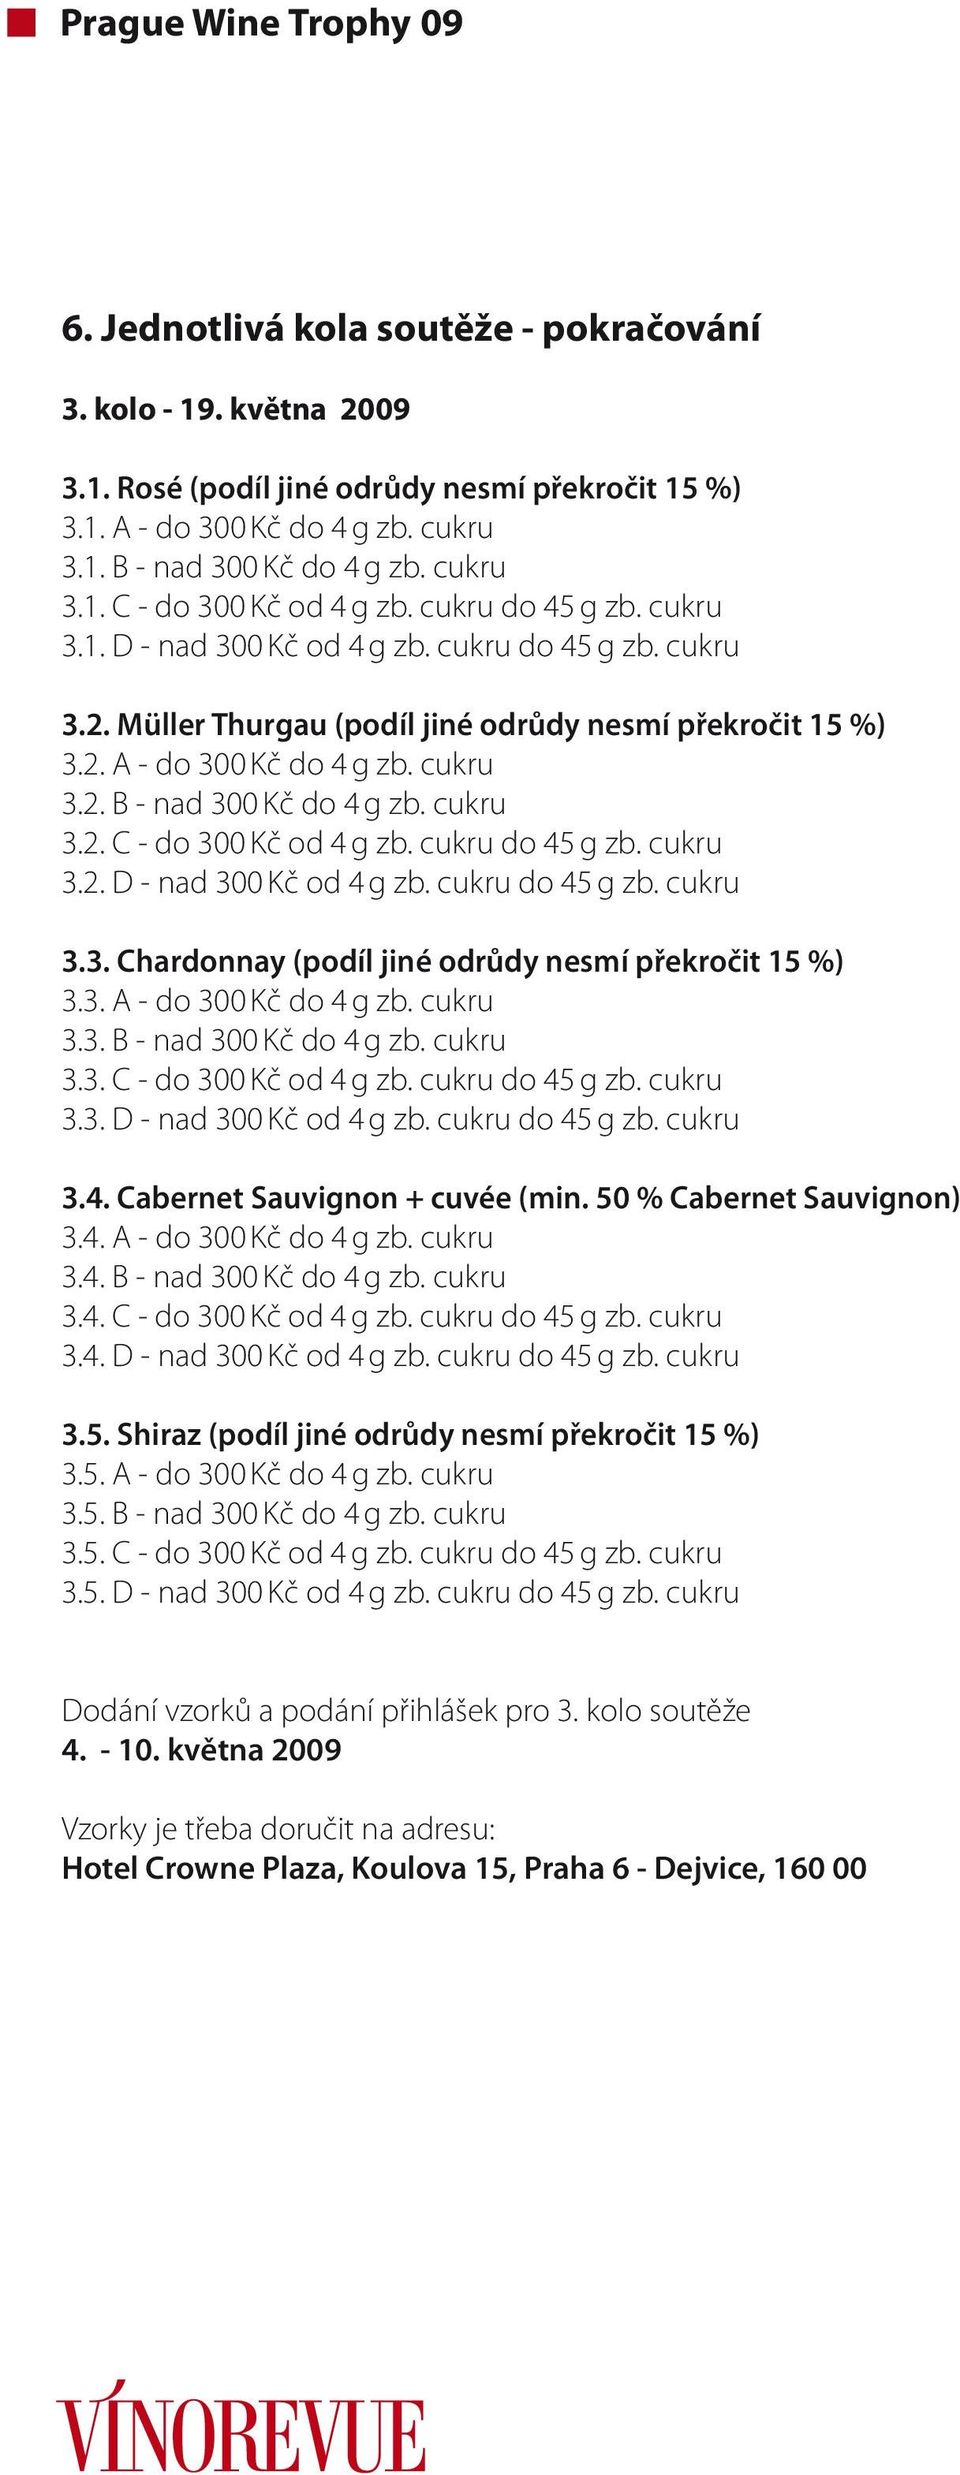 cukru 3.2. C - do 300 Kč od 4 g zb. cukru do 45 g zb. cukru 3.2. D - nad 300 Kč od 4 g zb. cukru do 45 g zb. cukru 3.3. Chardonnay (podíl jiné odrůdy nesmí překročit 15 %) 3.3. A - do 300 Kč do 4 g zb.